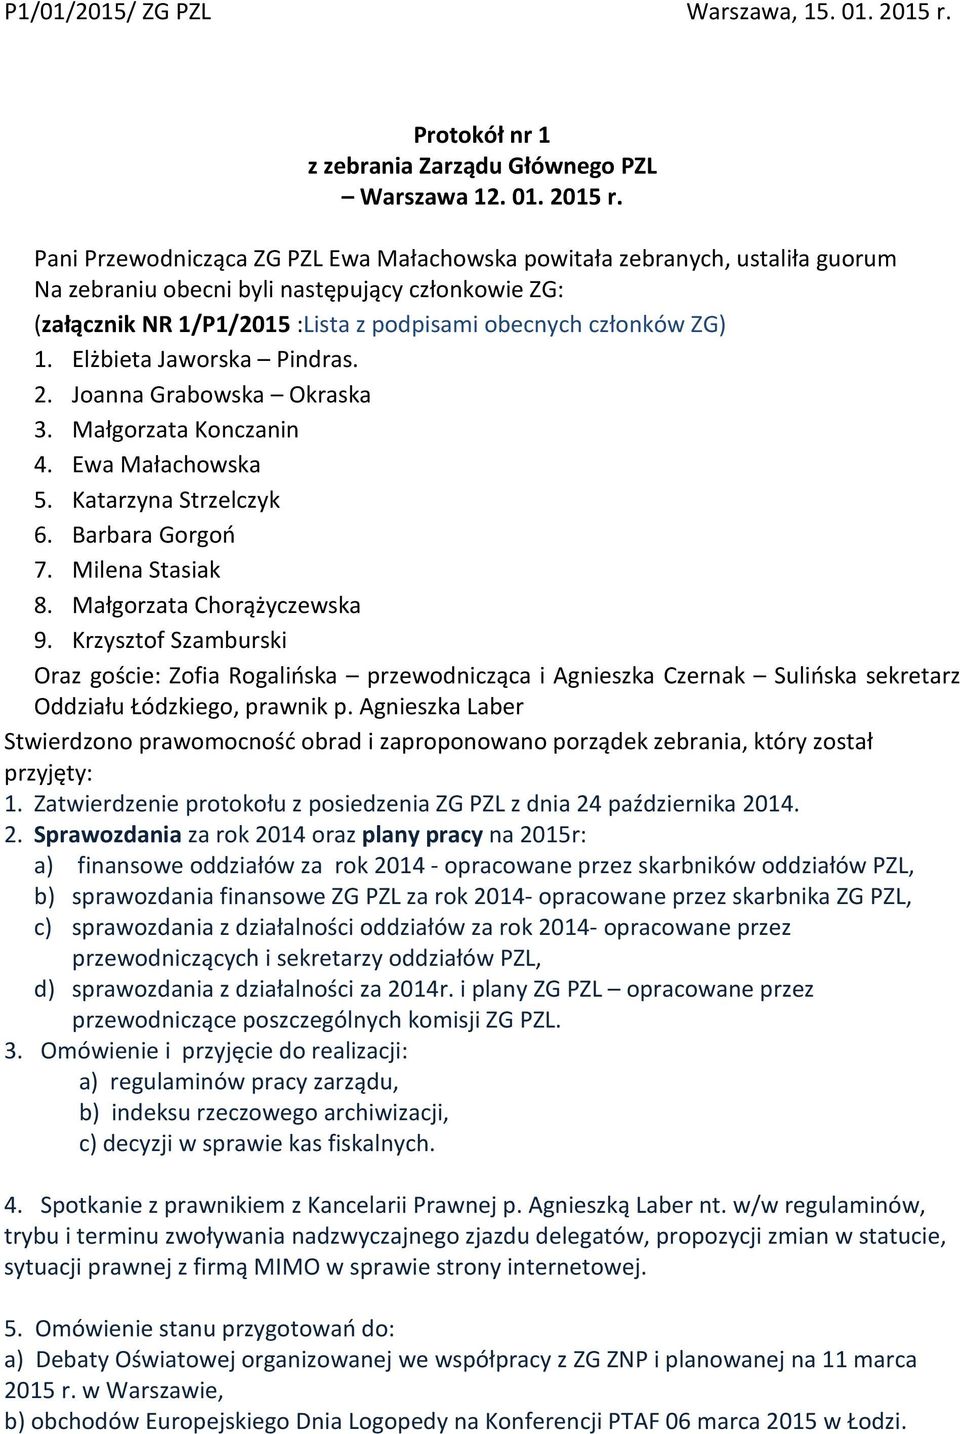 Pani Przewodnicząca ZG PZL Ewa Małachowska powitała zebranych, ustaliła guorum Na zebraniu obecni byli następujący członkowie ZG: (załącznik NR 1/P1/2015 :Lista z podpisami obecnych członków ZG) 1.